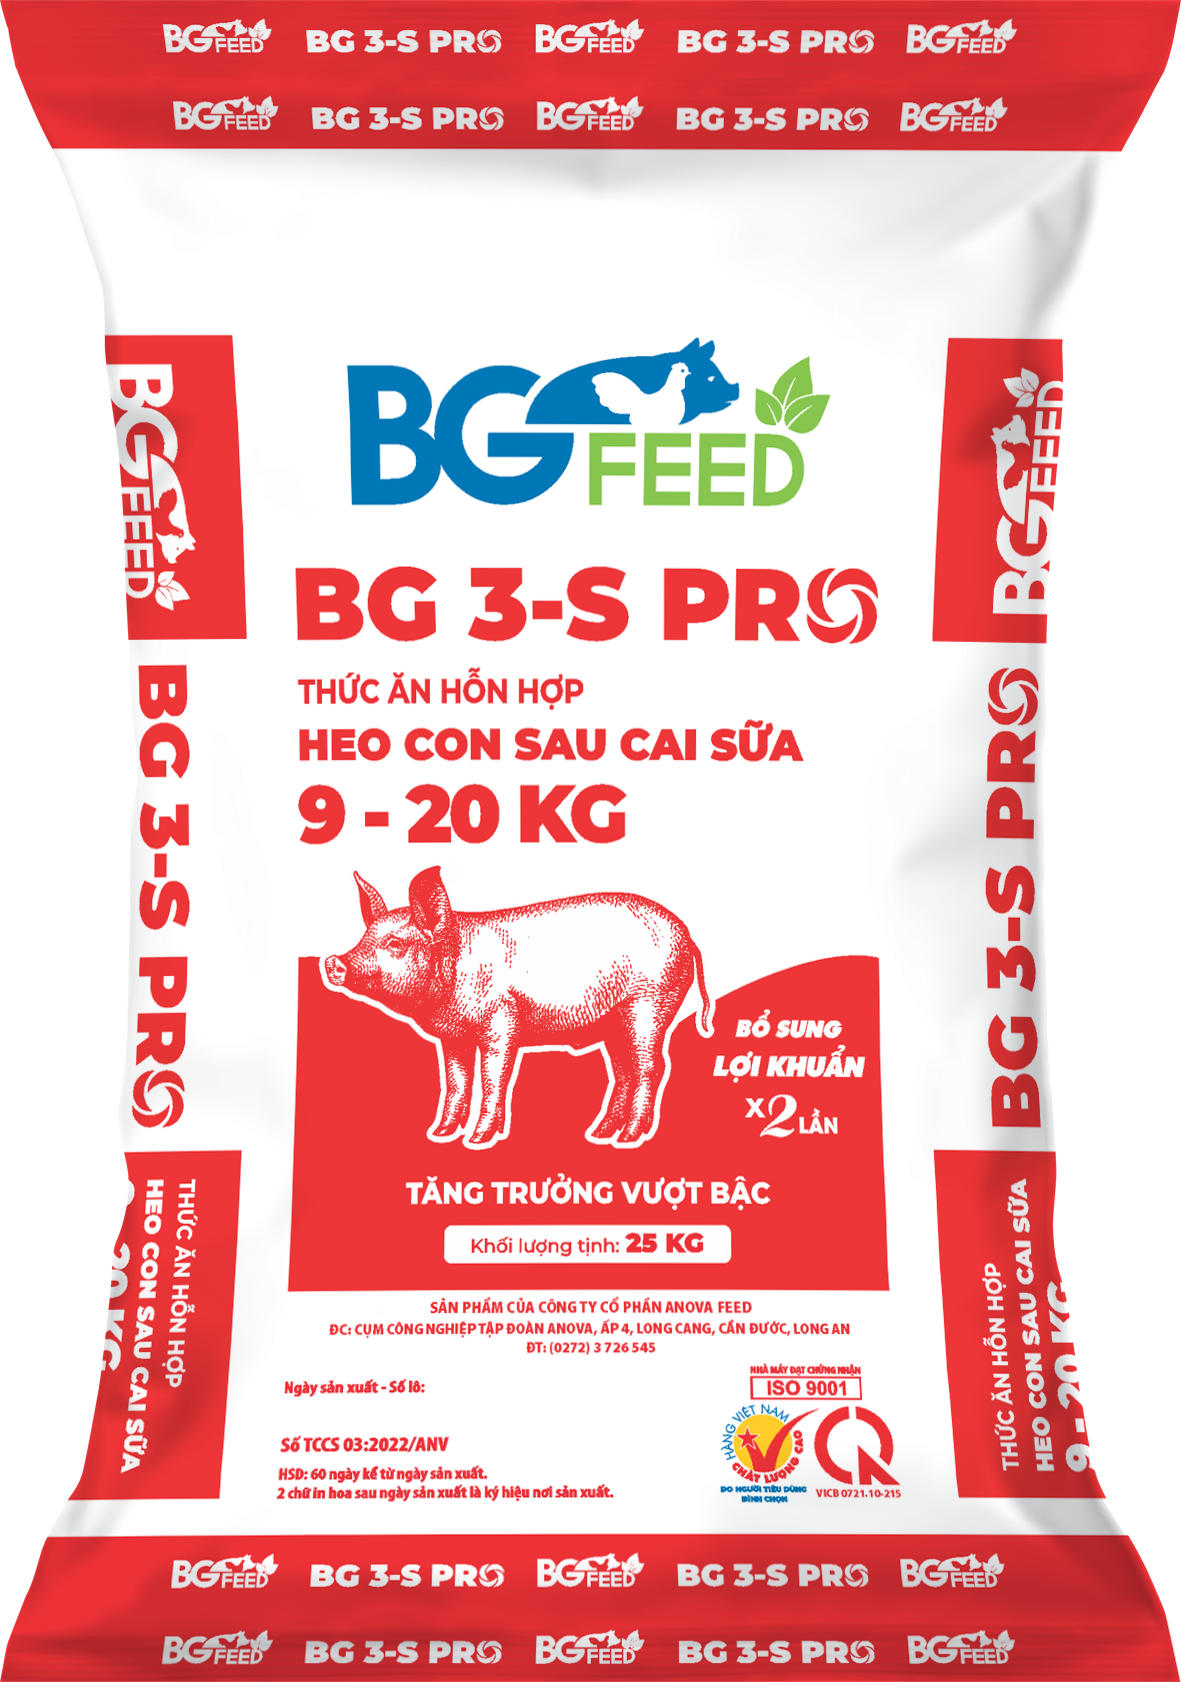 Thức ăn hỗn hợp cho heo con sau cai sữa 9-20kg BG 3-S PRO